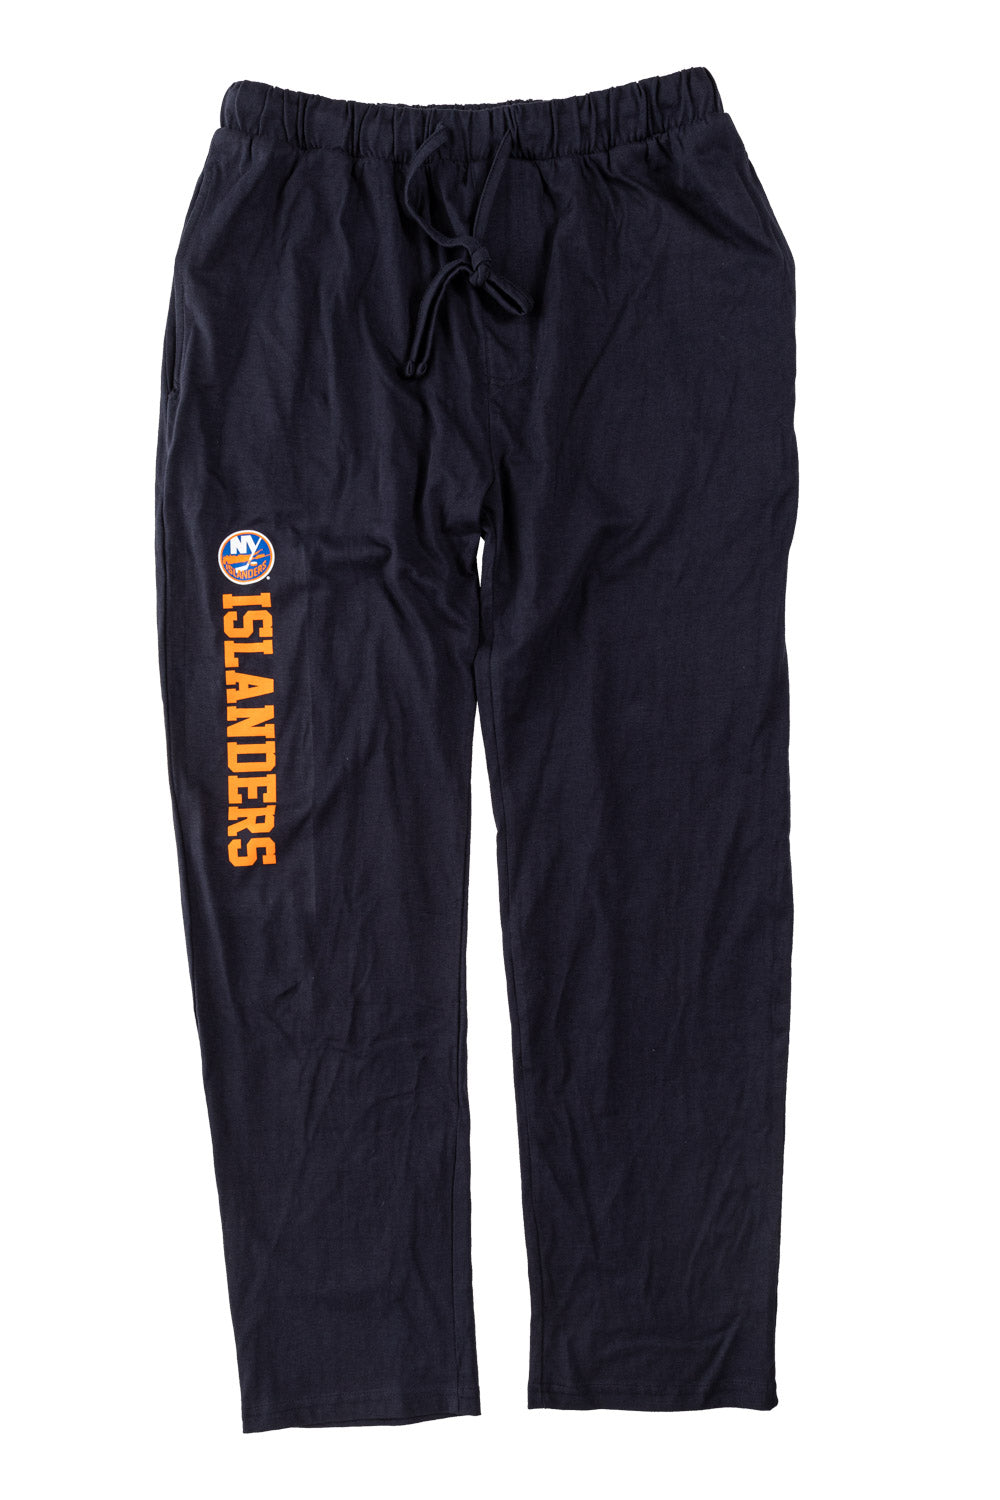 New York Islanders Men's Cotton Jersey Pants